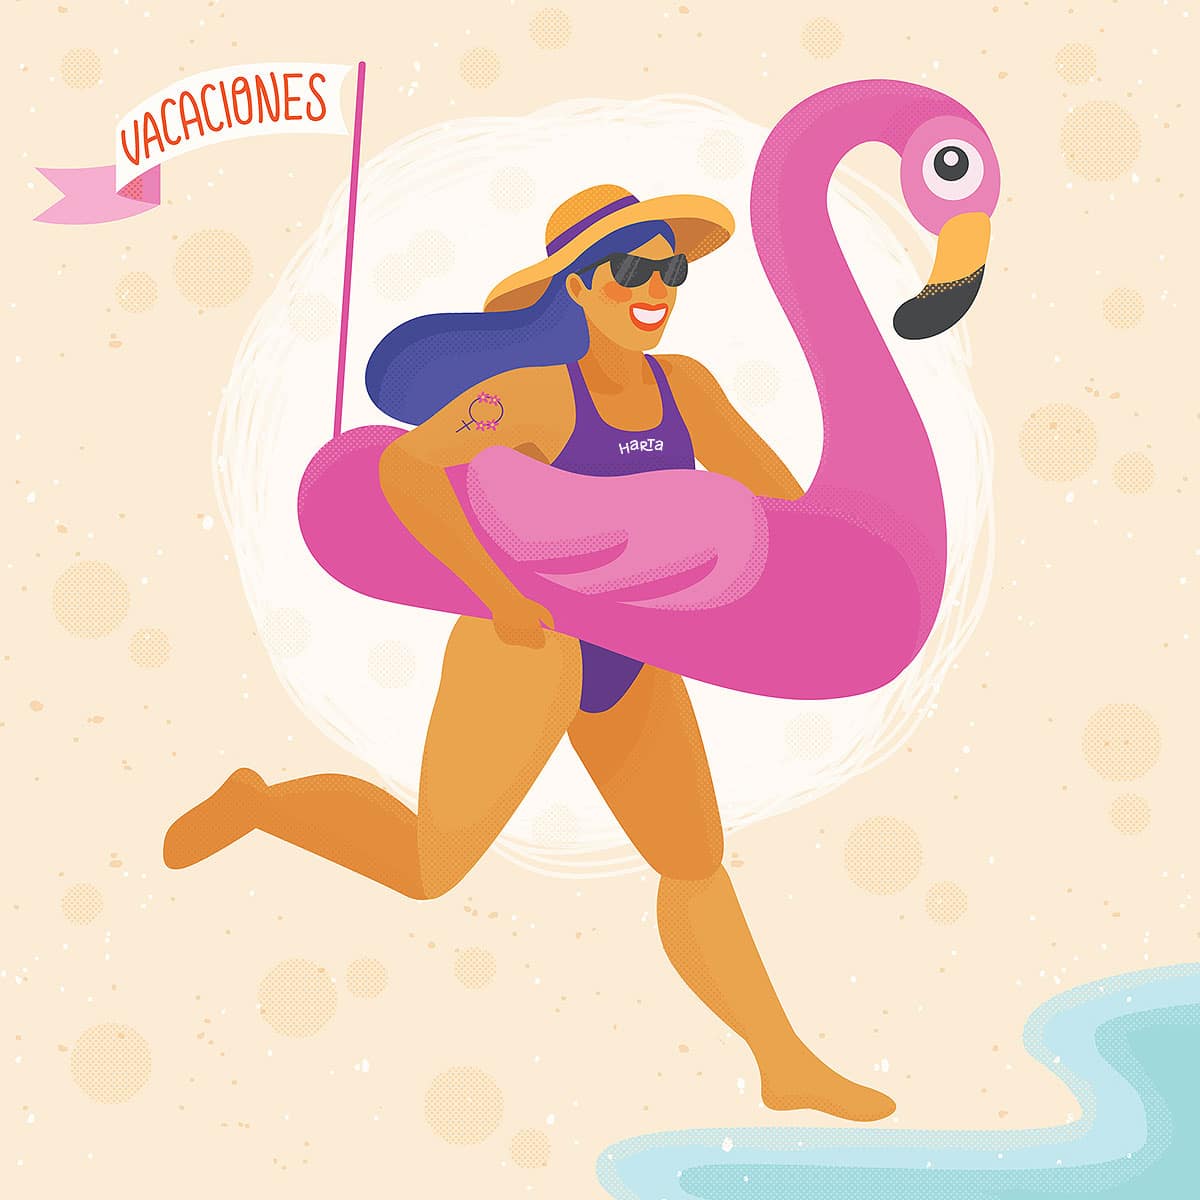 La ilustración es una chica con un flotador gigante con forma de flamenco corriendo al mar, del flotador sale un banderín que dice vacaciones y en la malla está el logo de la revista.